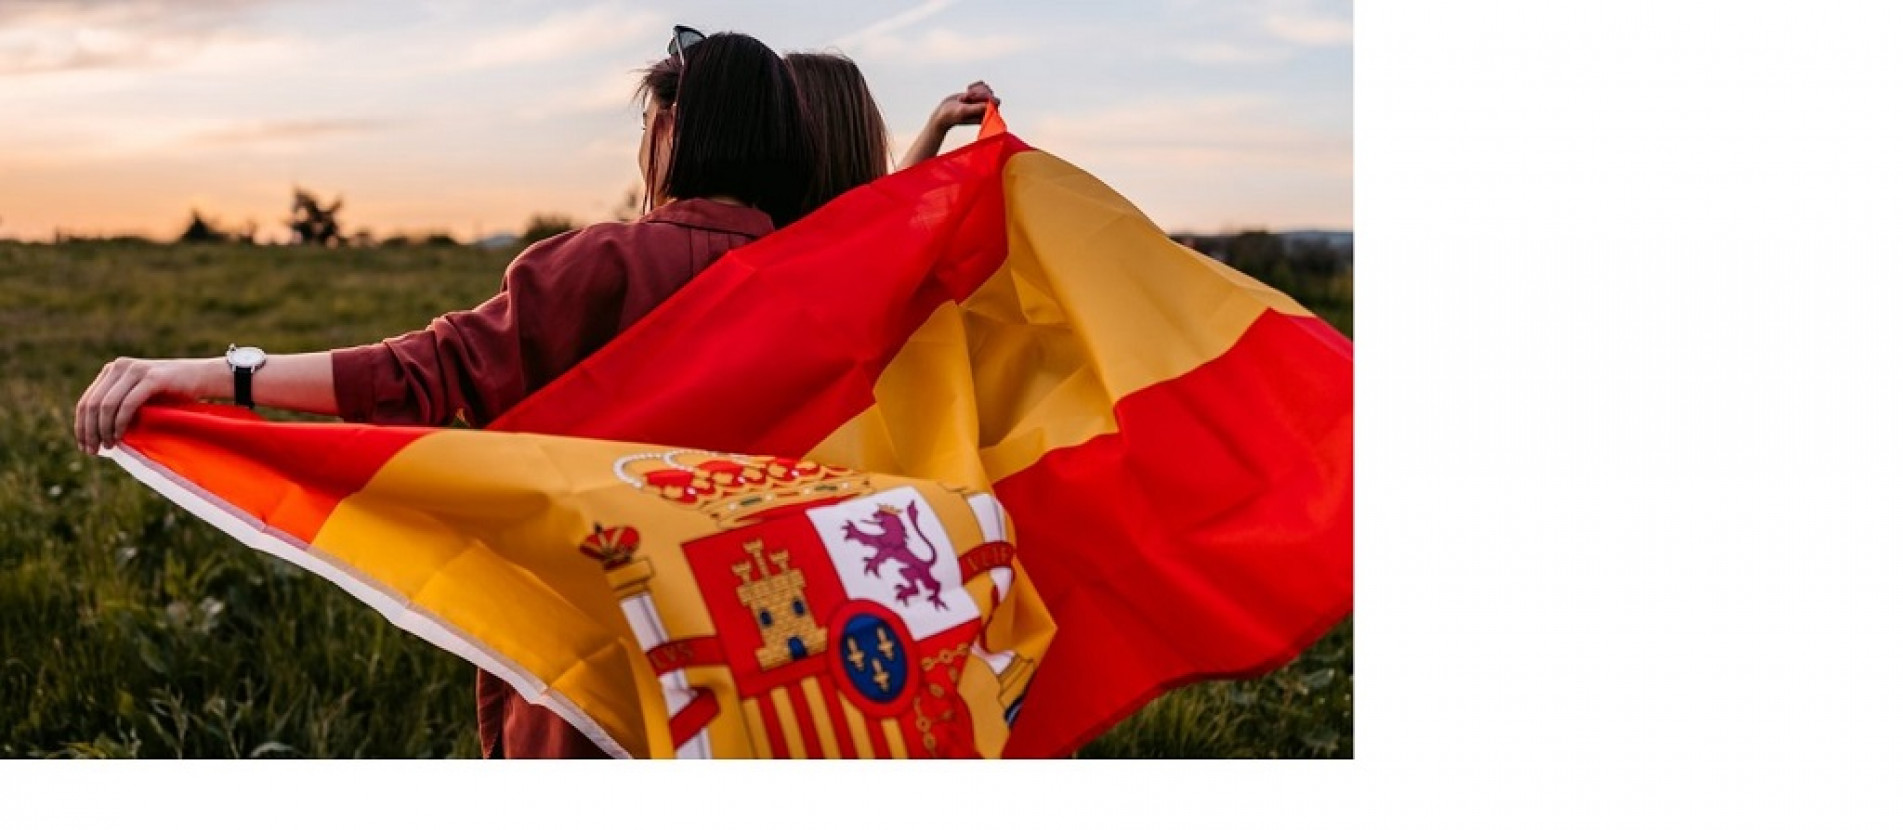 Nova legislação pode beneficiar muitos sorocabanos descendentes de espanhóis